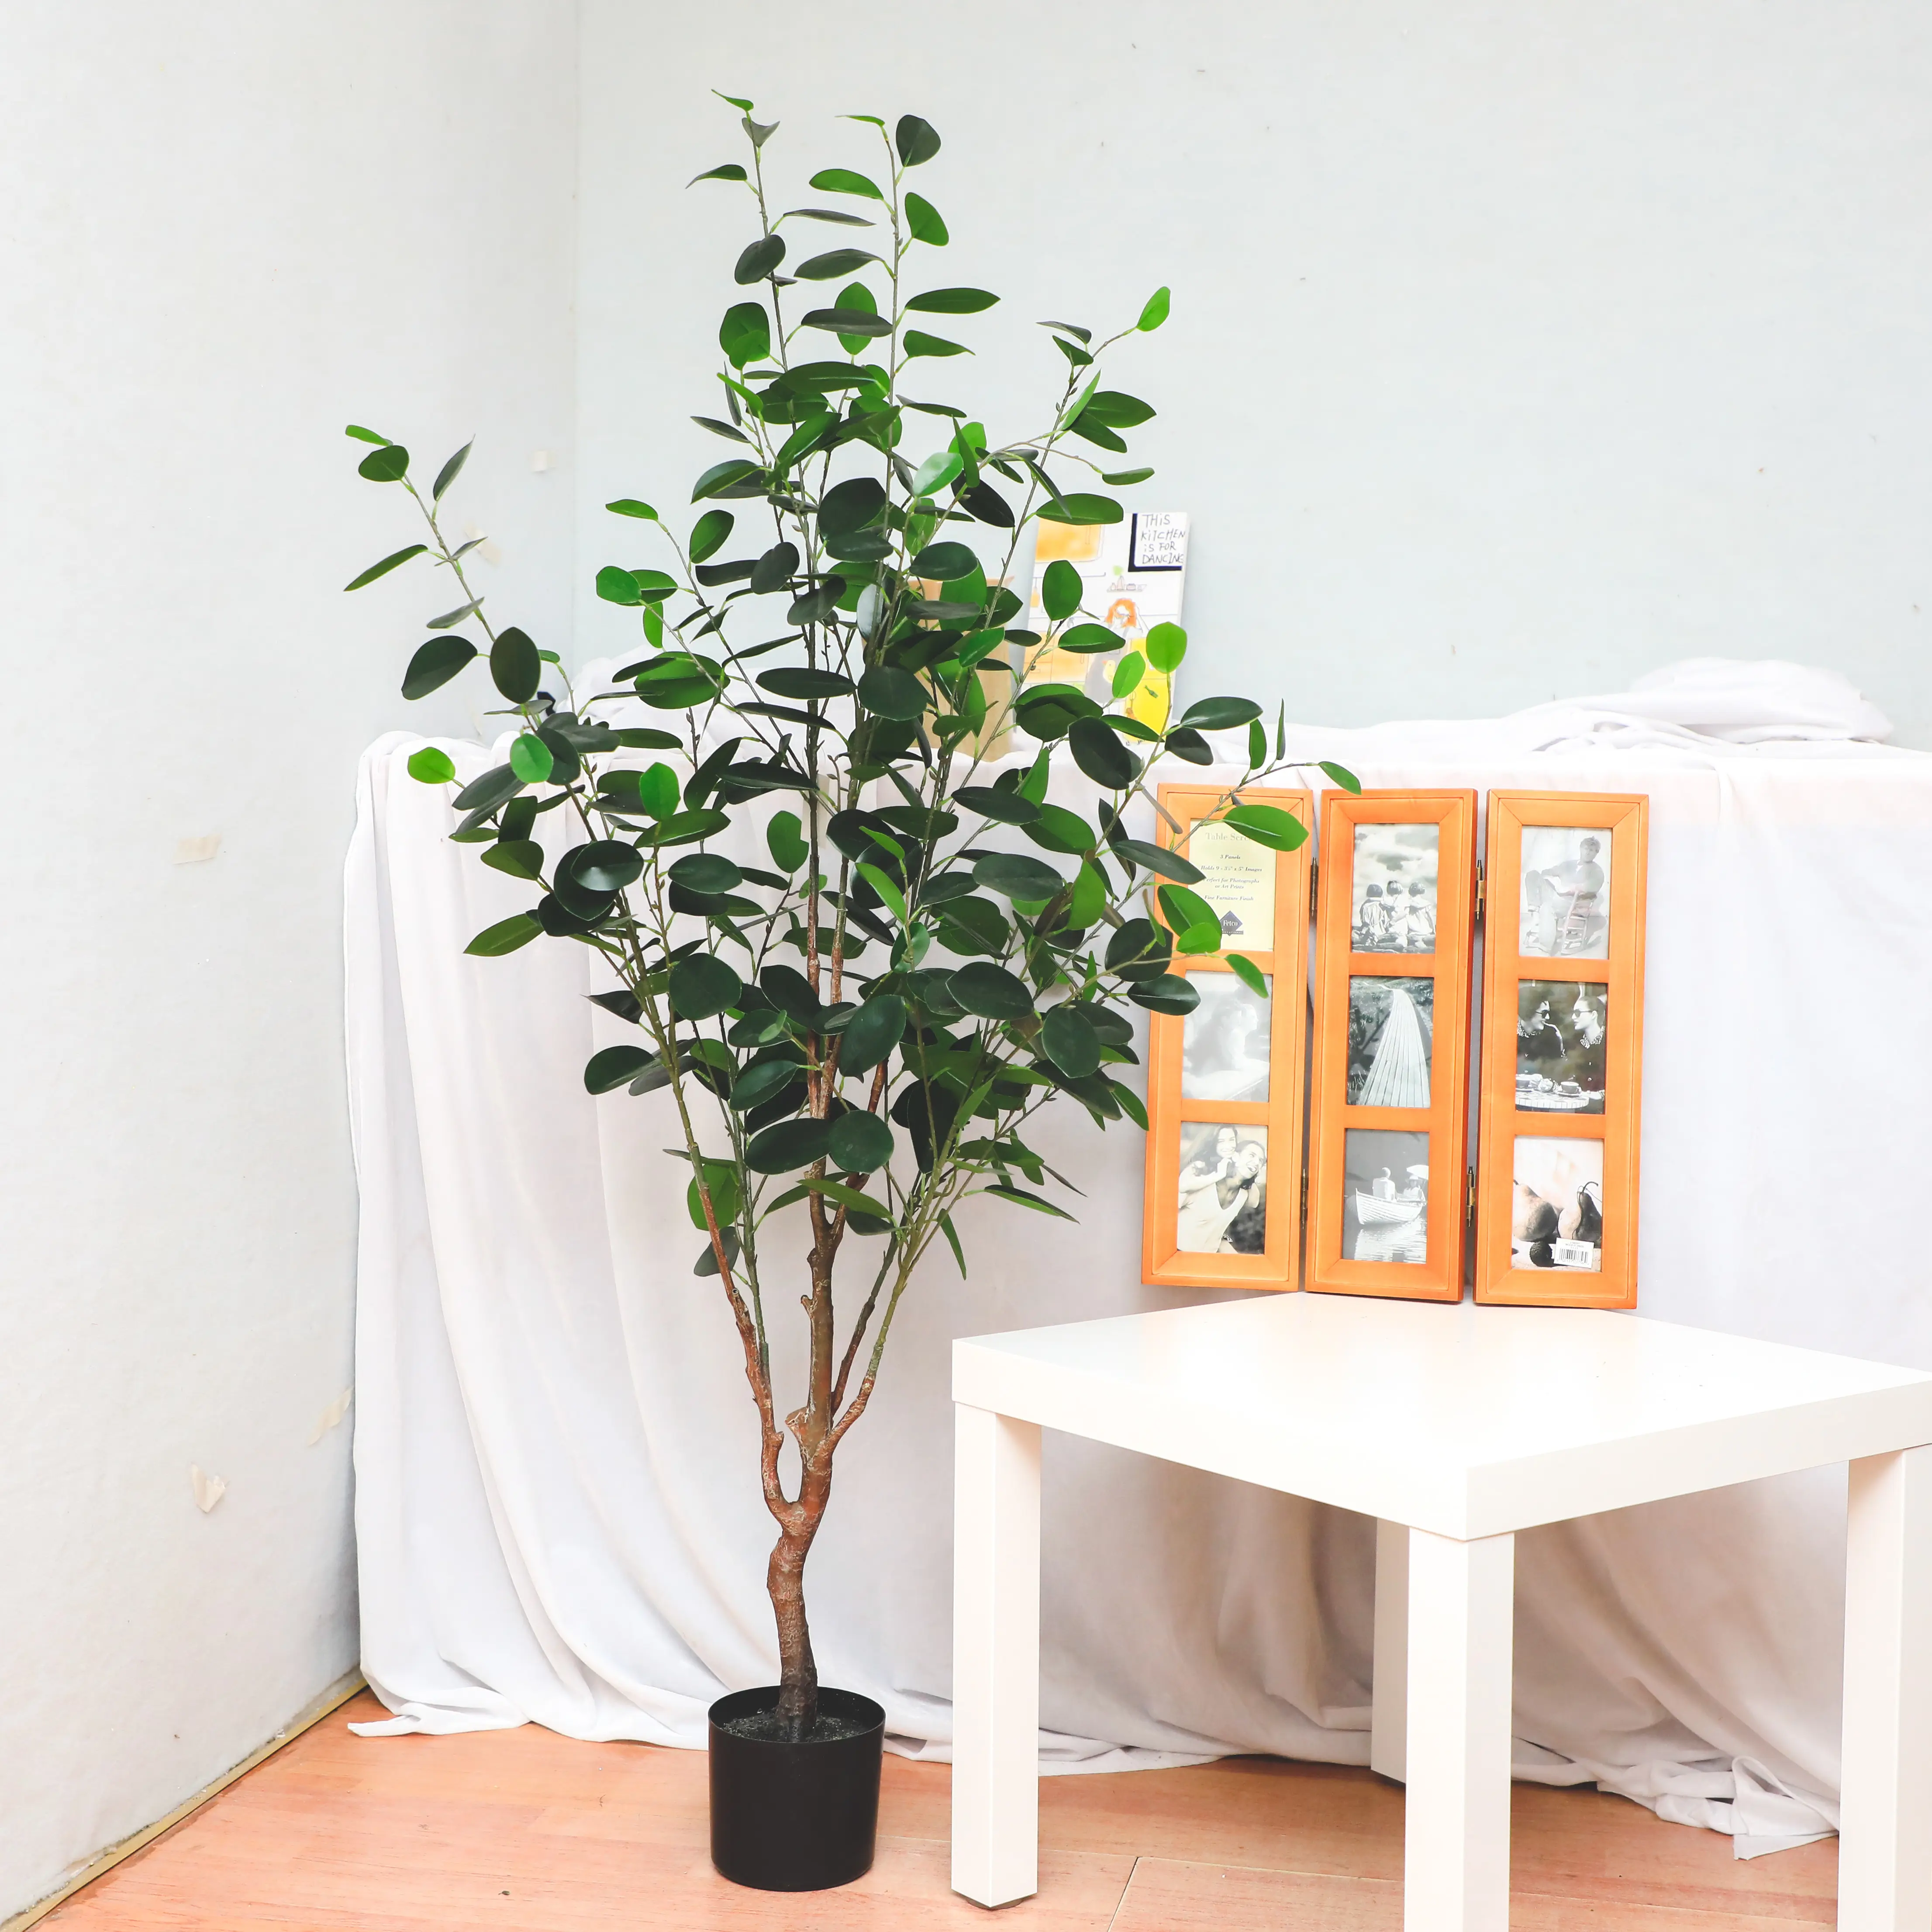 Новый стиль, растения бонсай, Китай, высокое качество, декоративные мини-растения бонсай маленького и среднего размера фикус микрокарпа